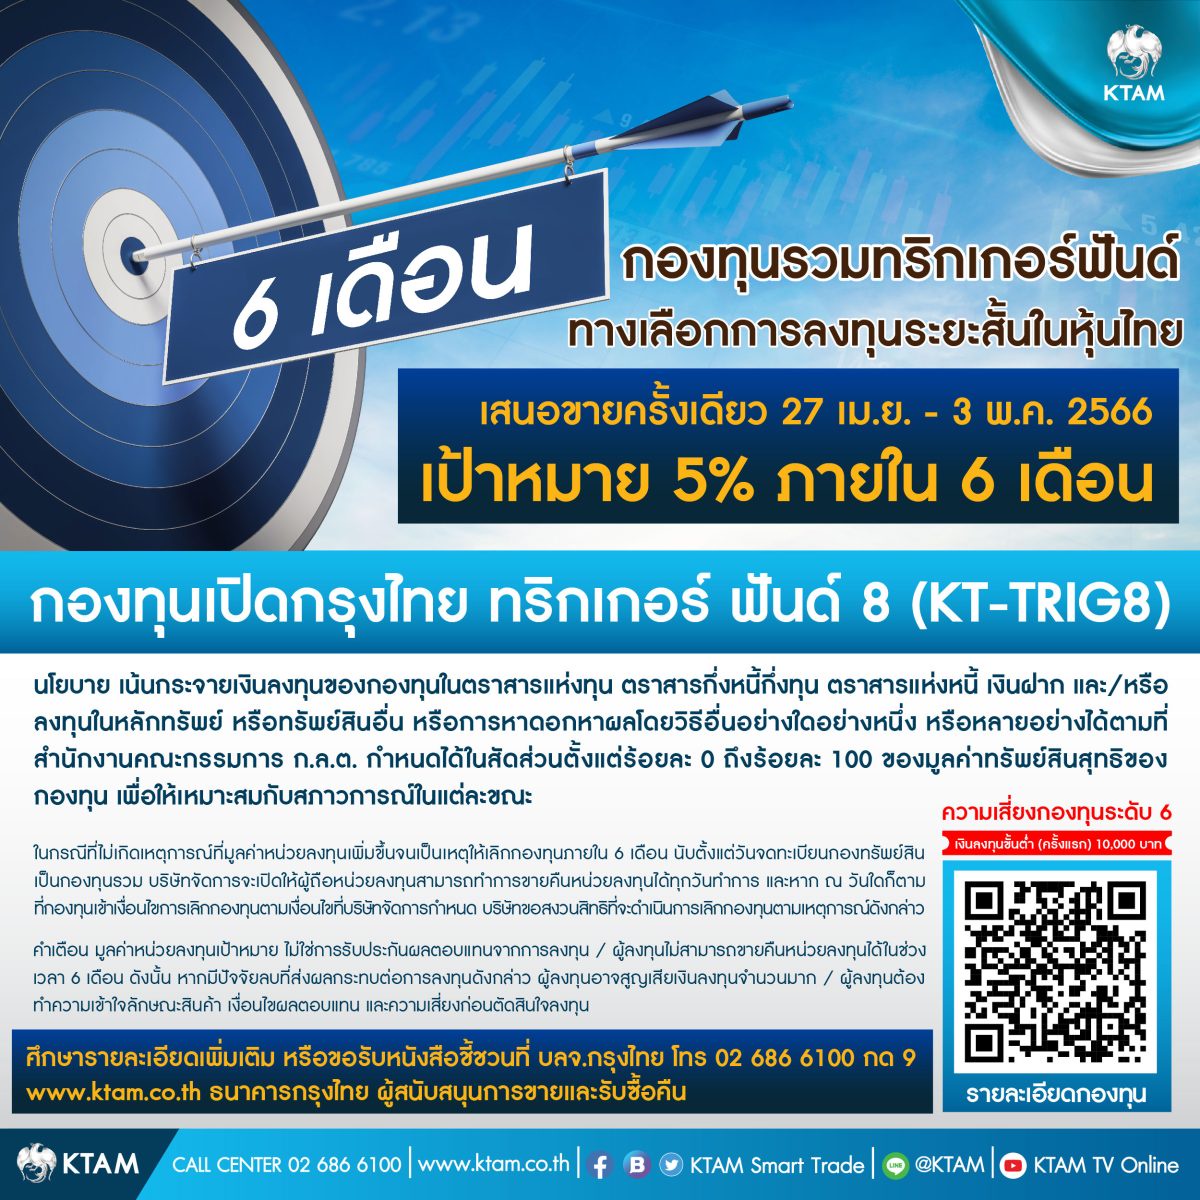 KTAM เล็งจังหวะลุยหุ้นไทย ปล่อยกองทริกเกอร์ต่อเนื่อง KT-TRIG8 เสนอขาย 27 เม.ย. - 3 พ.ค. นี้ ตั้งเป้า 5% ใน 6 เดือน